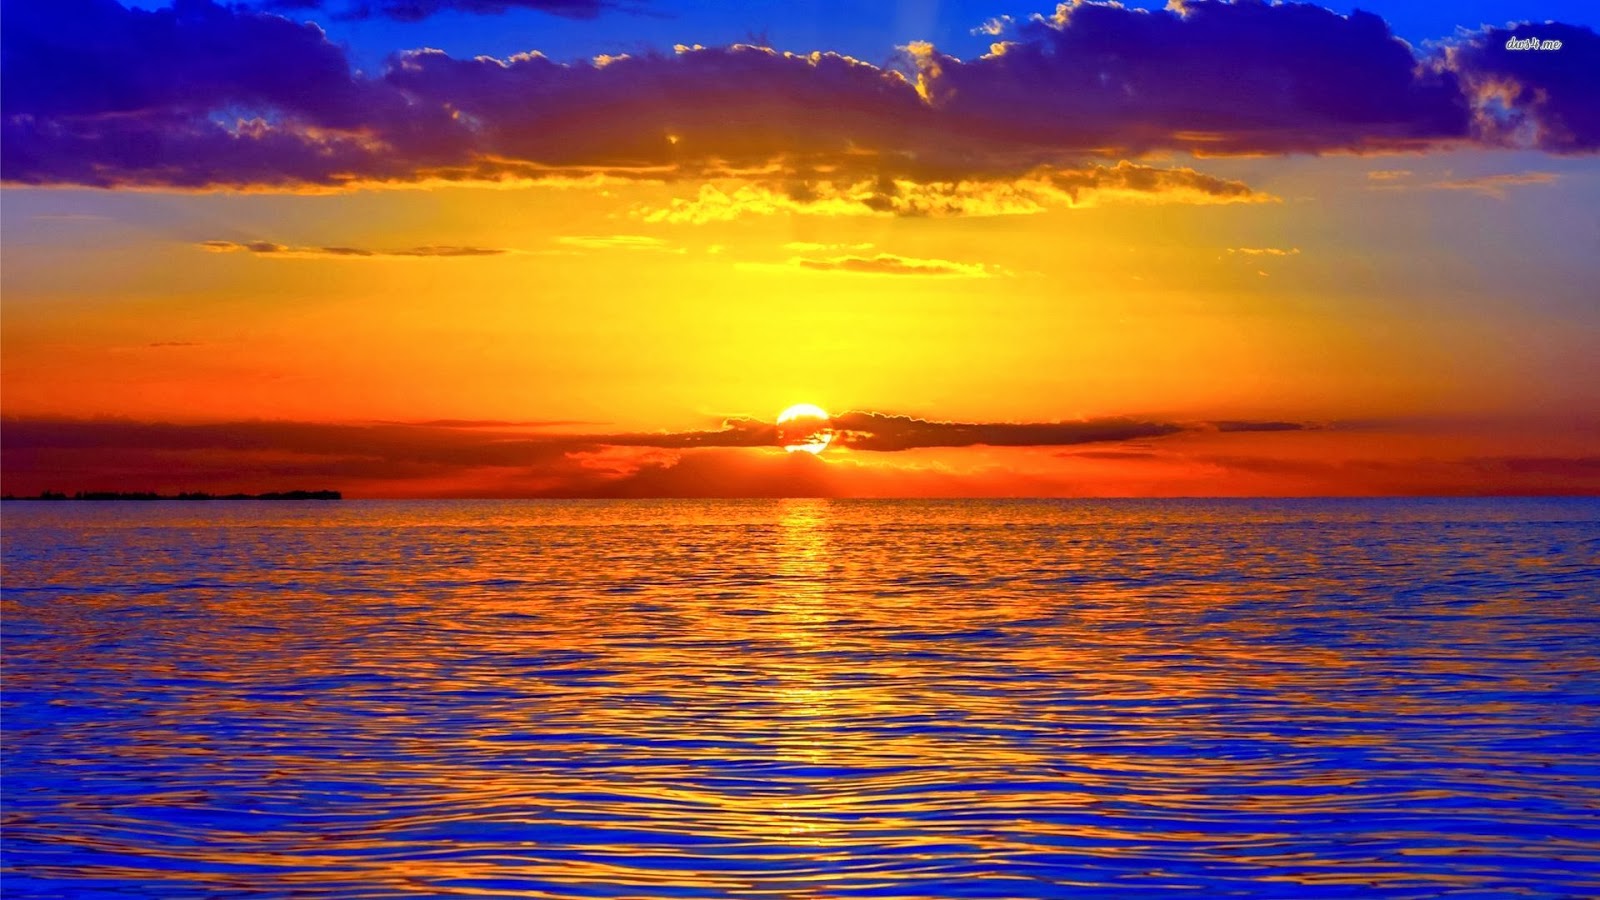 tramonto wallpaper hd,cielo,orizzonte,ultimi bagliori,corpo d'acqua,tramonto